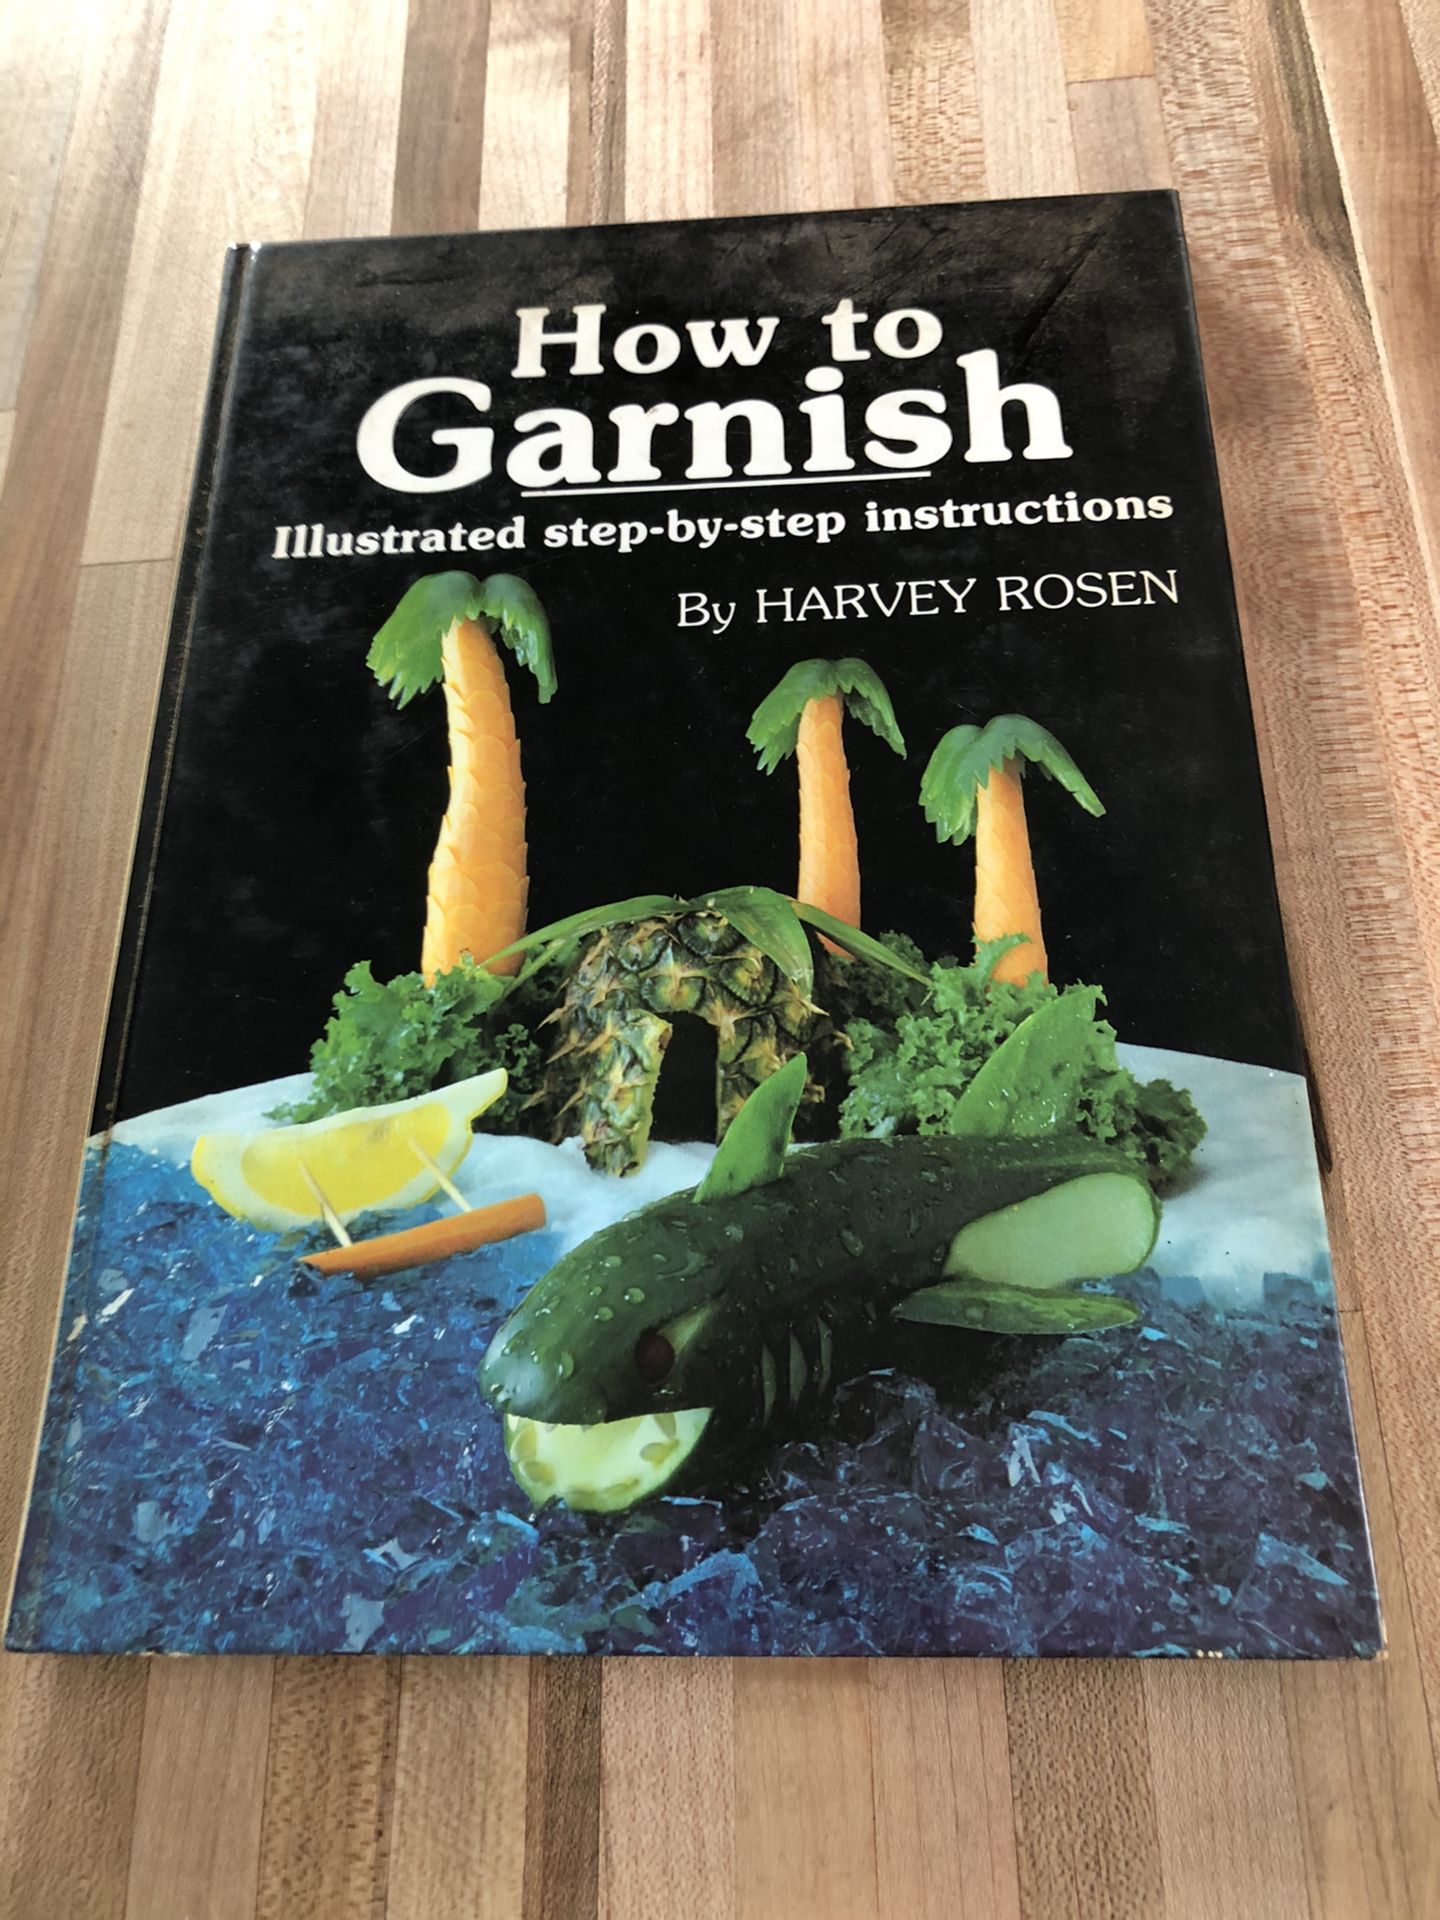 How to Garnish